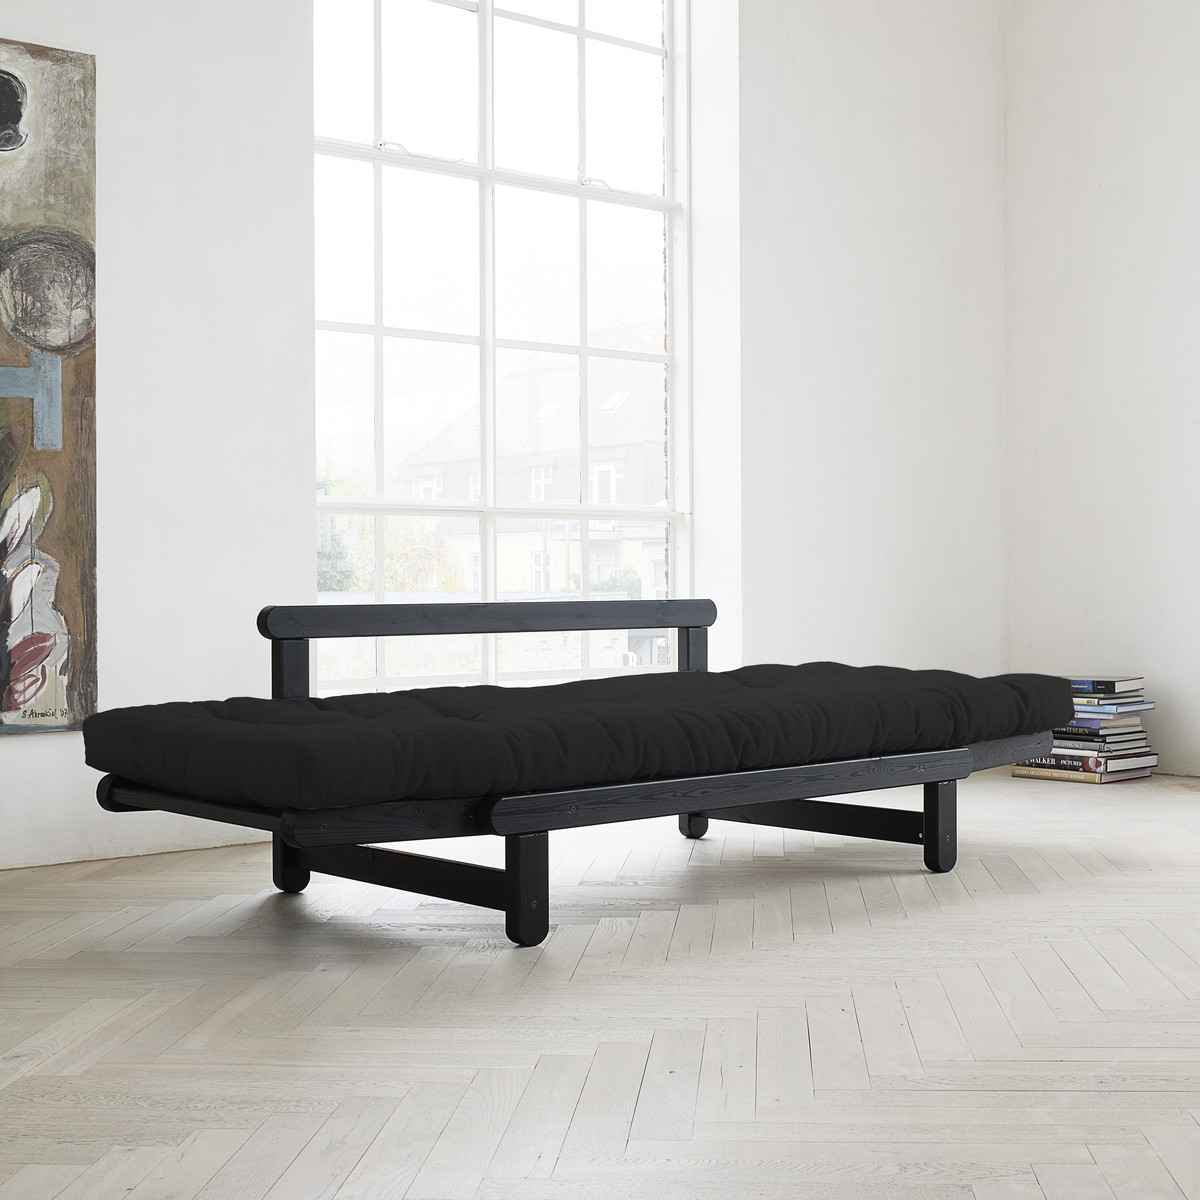 Canapé futon convertible structure noire QUITO Couchage 75 x 200 cm